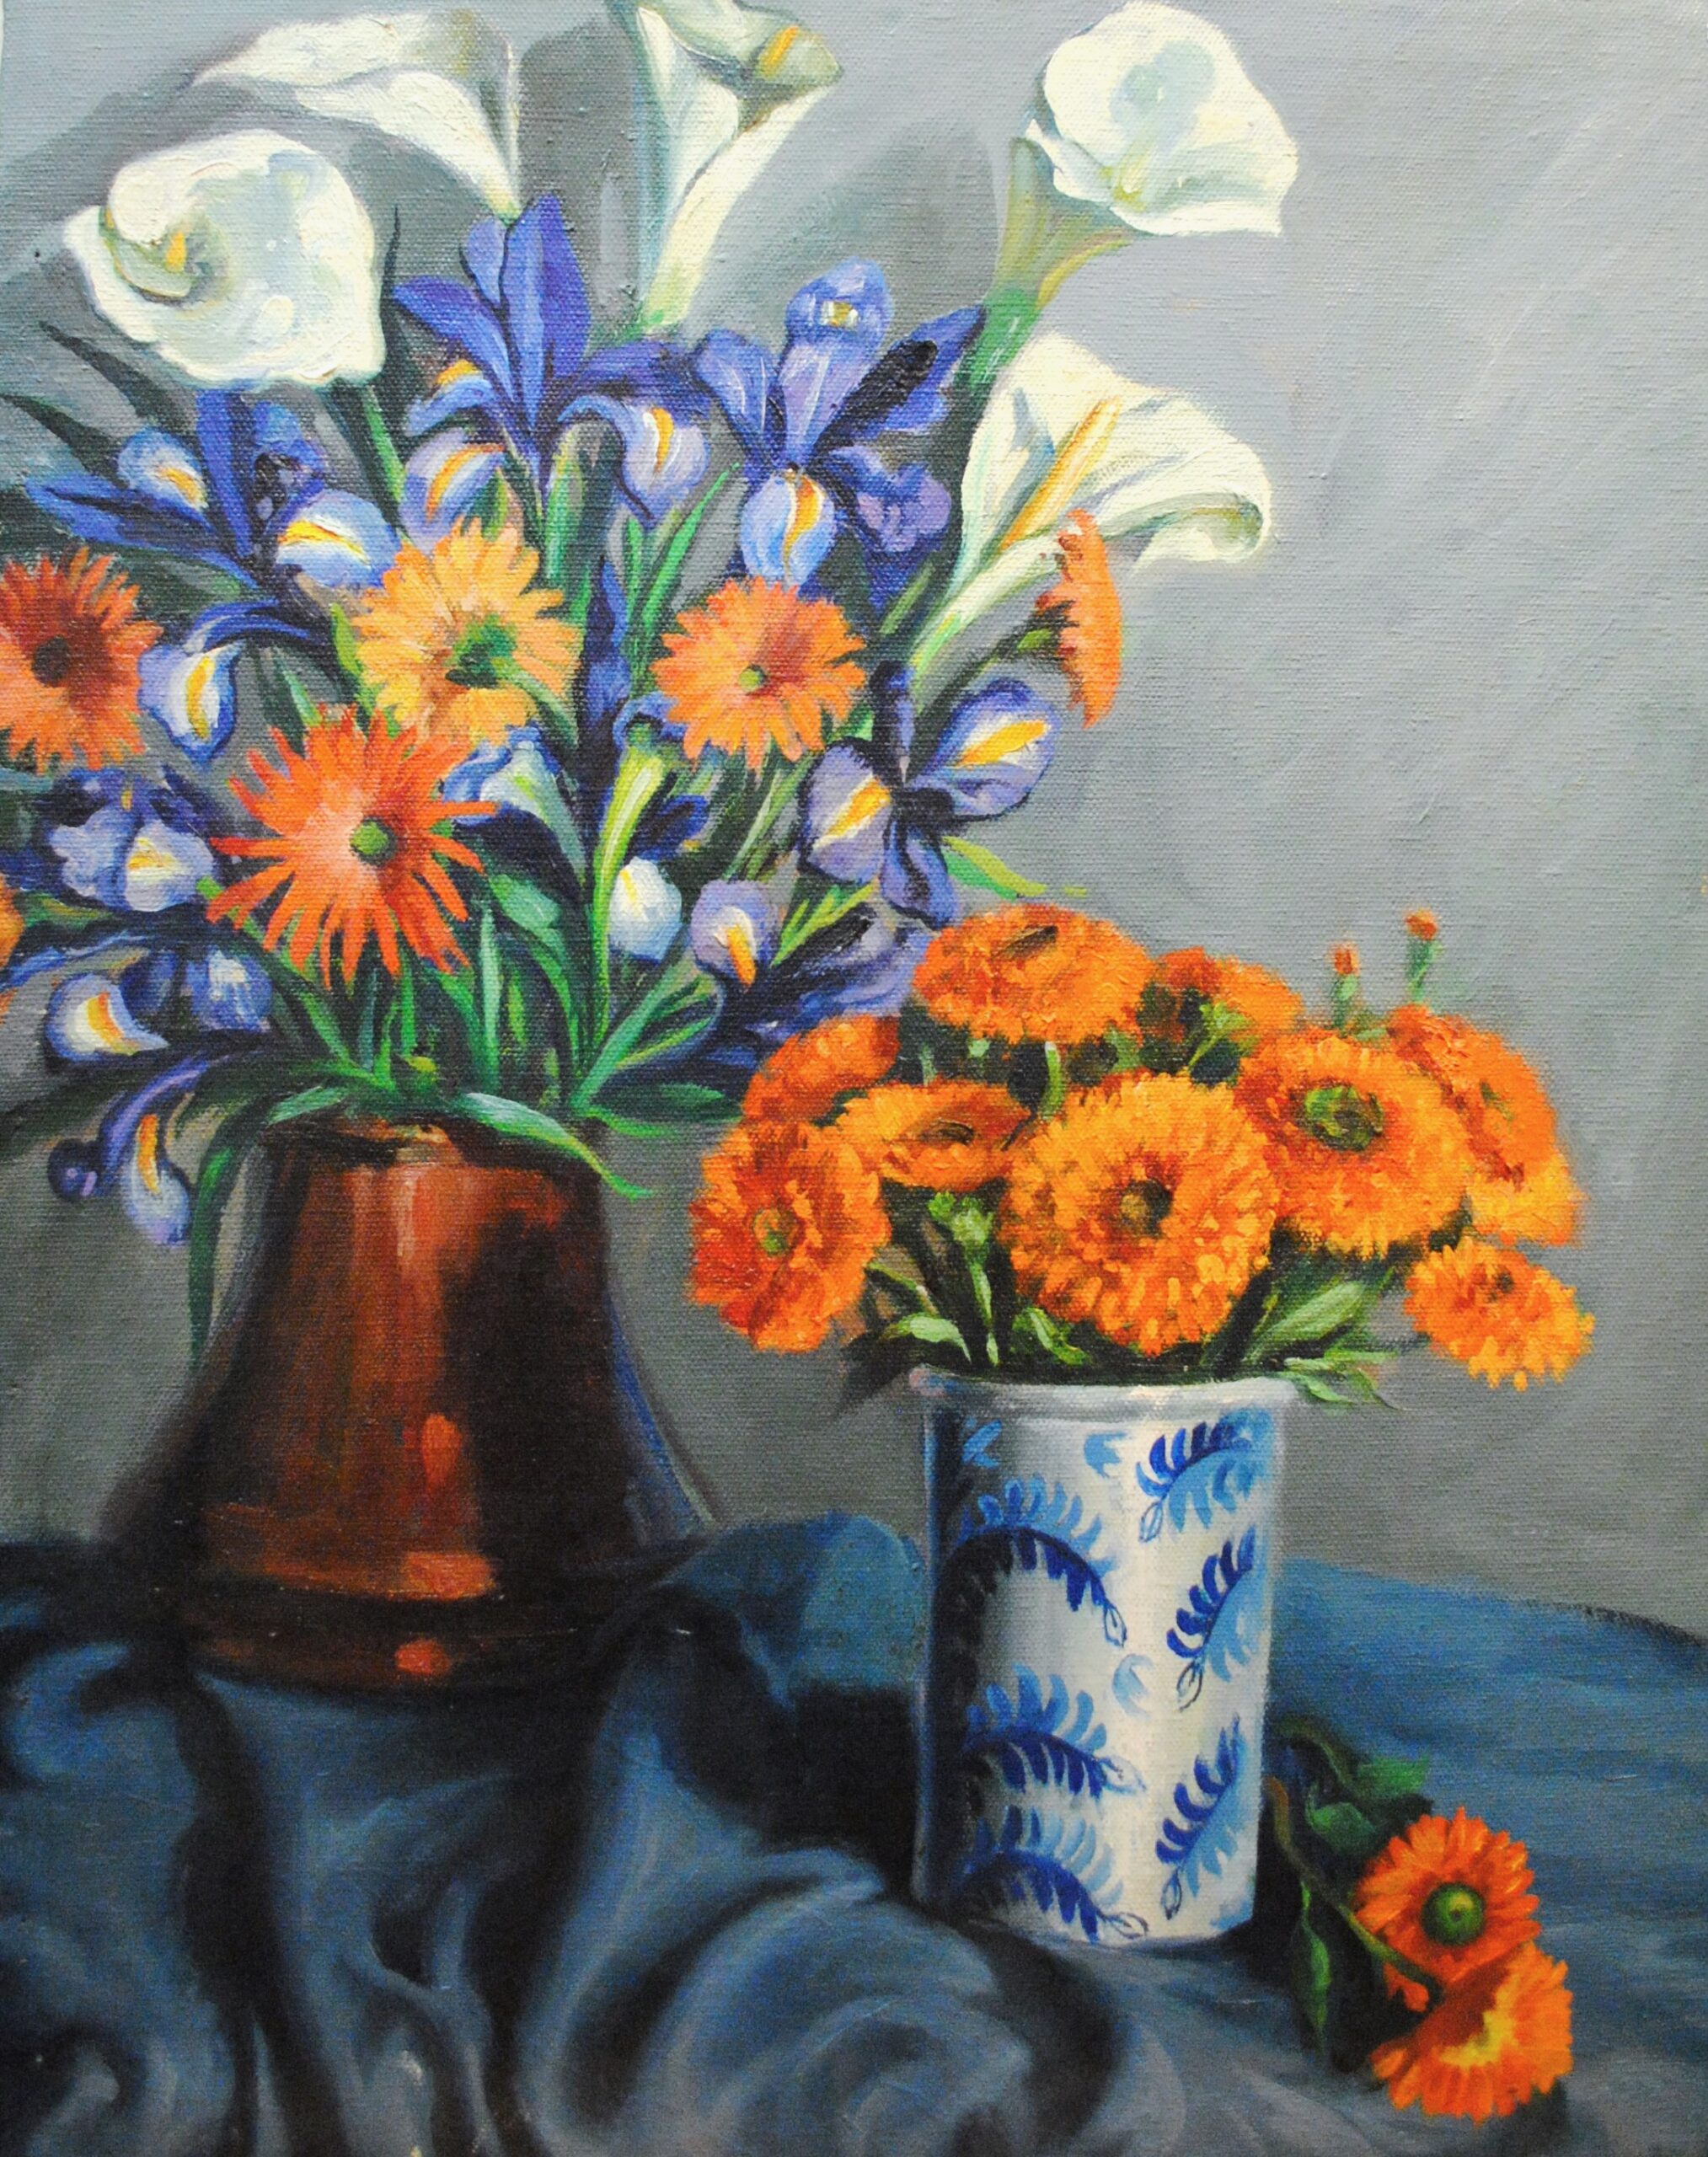 Pintura de José Manaut titulada Jarras con flores, 1965. Óleo sobre lienzo.